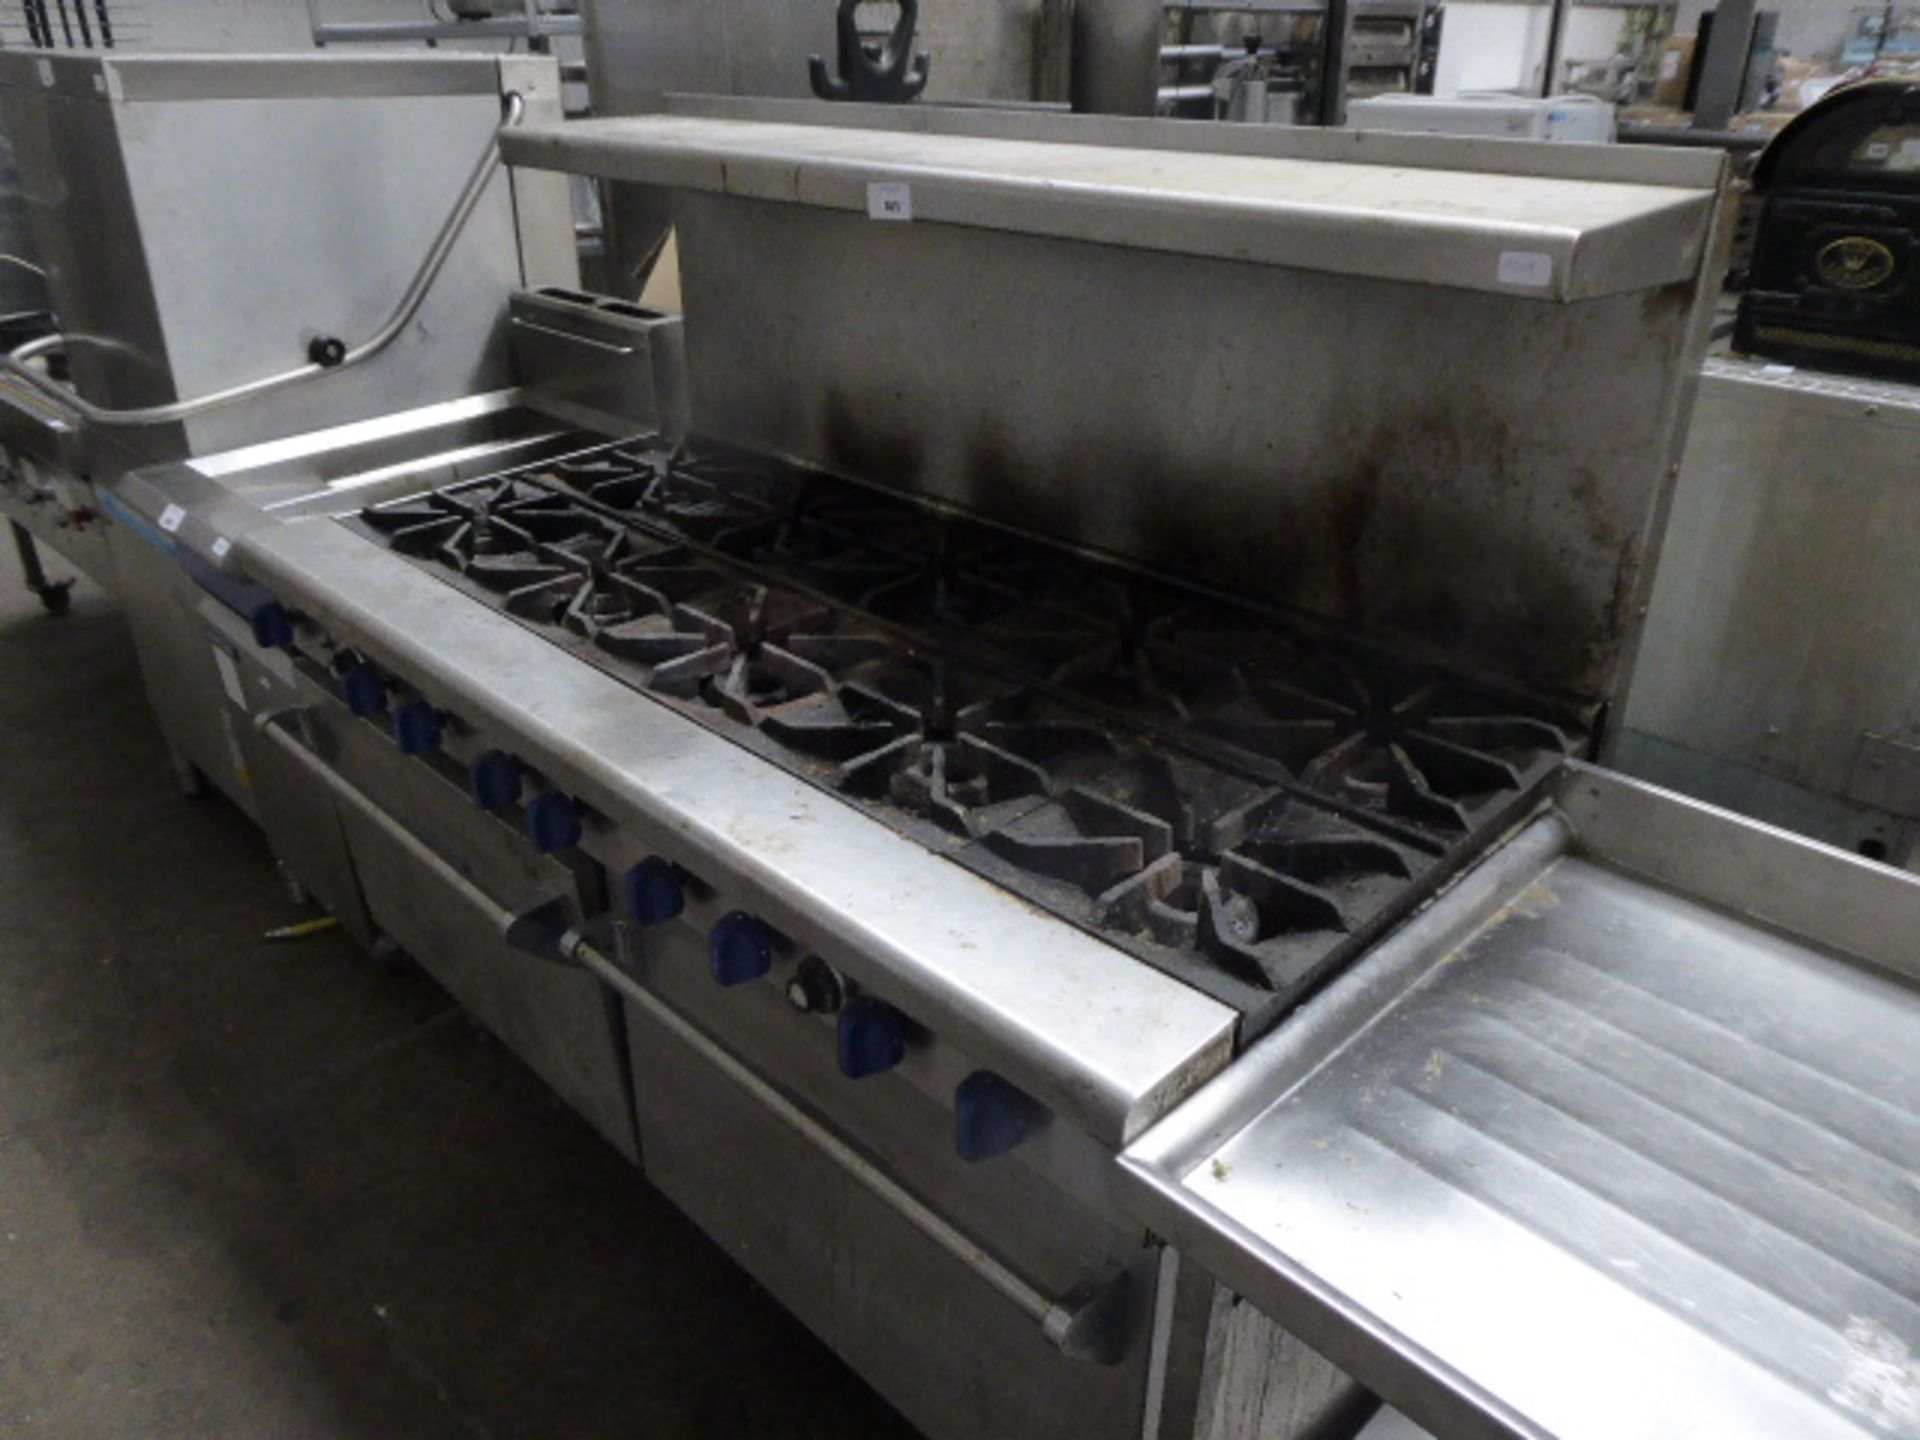 150cm gas Elite 10 burner range cooker with 2 large single door ovens under